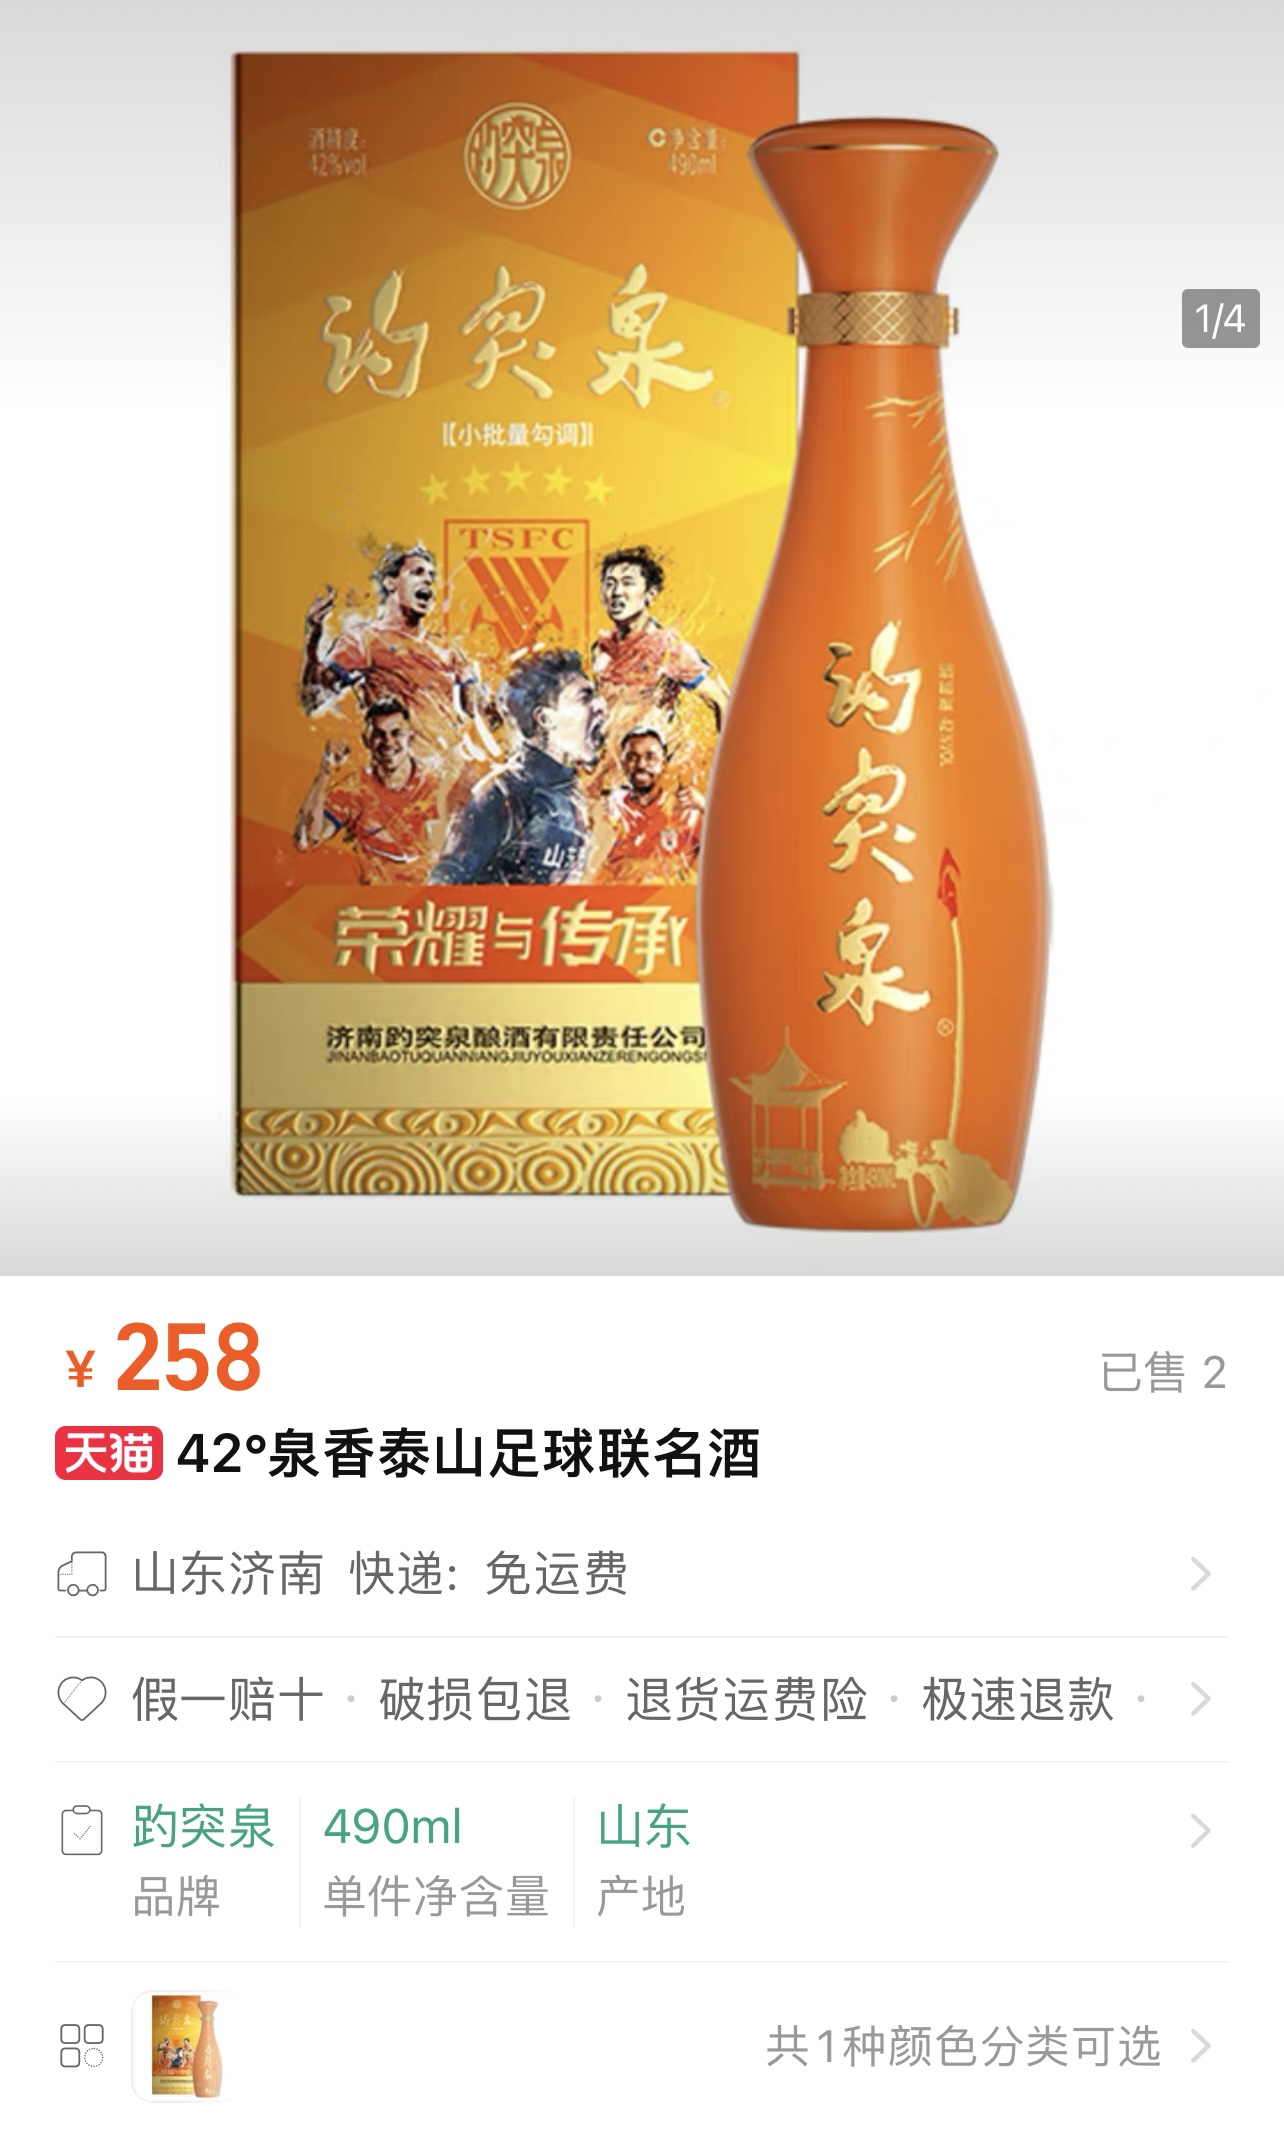 258元/瓶🍾泰山足球-趵突泉“ 42°泉香泰山足球联名酒”上市